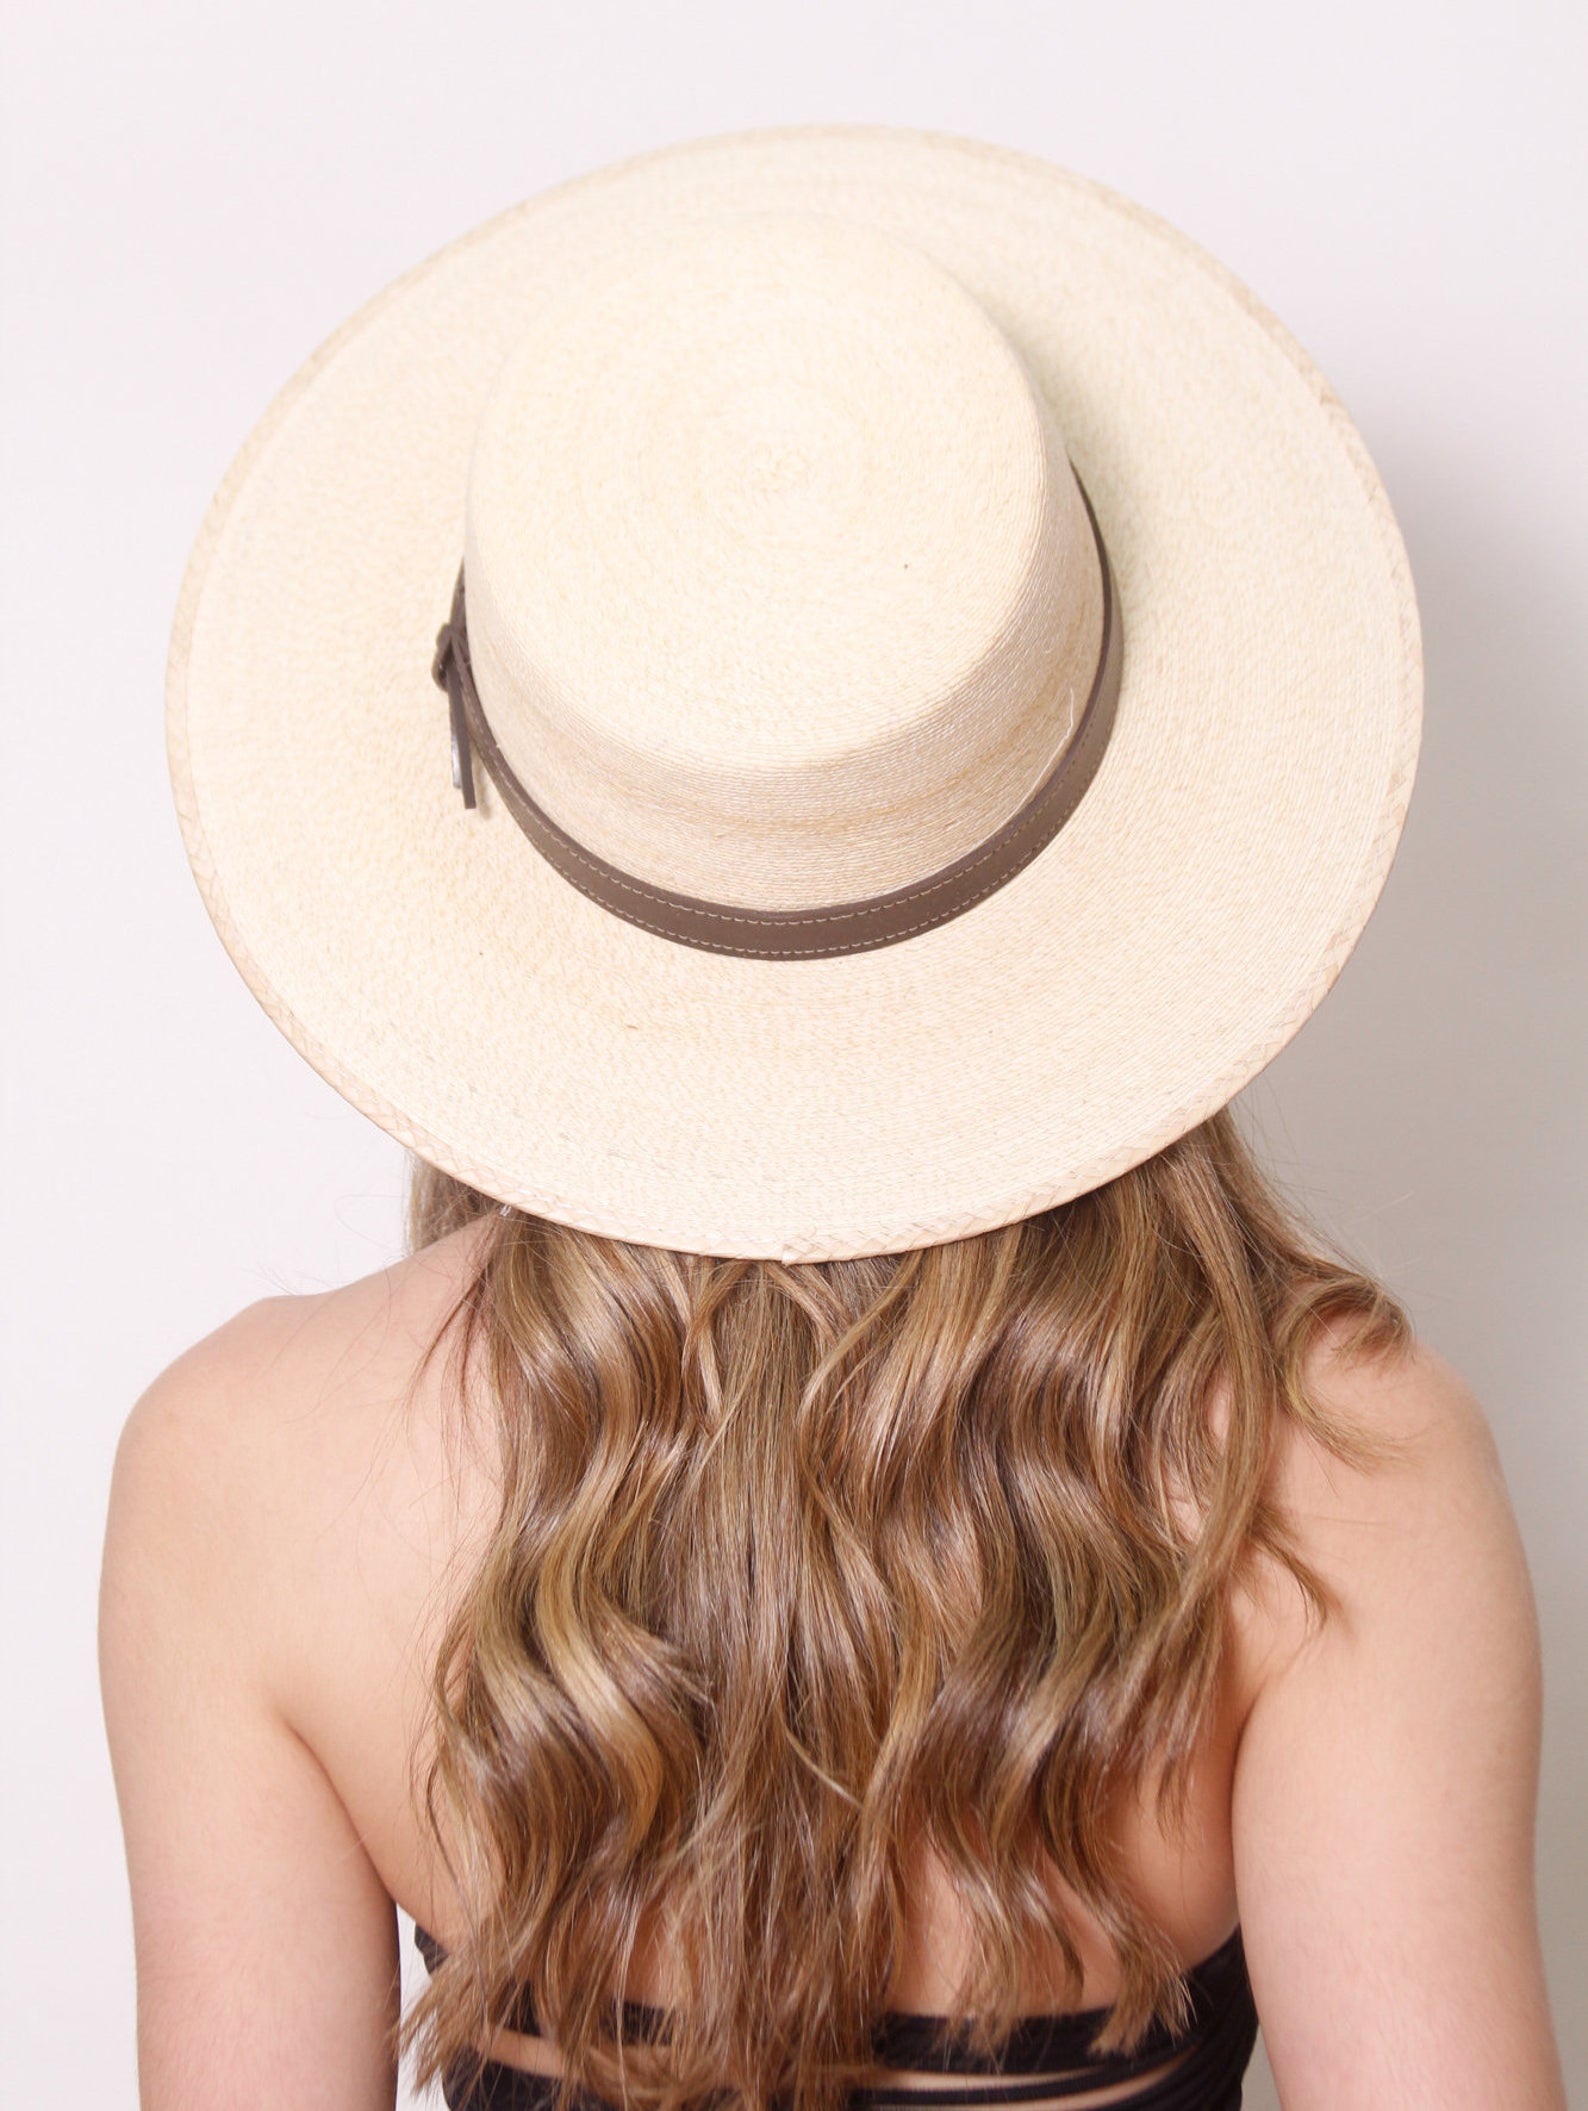 Maya by Me Cute Summer Sun Hats for Your Wedding or Elopement Bridal Musings - 25 chiếc mũ cô dâu mùa hè hợp thời trang cho chuyến đi của bạn Cottagecore